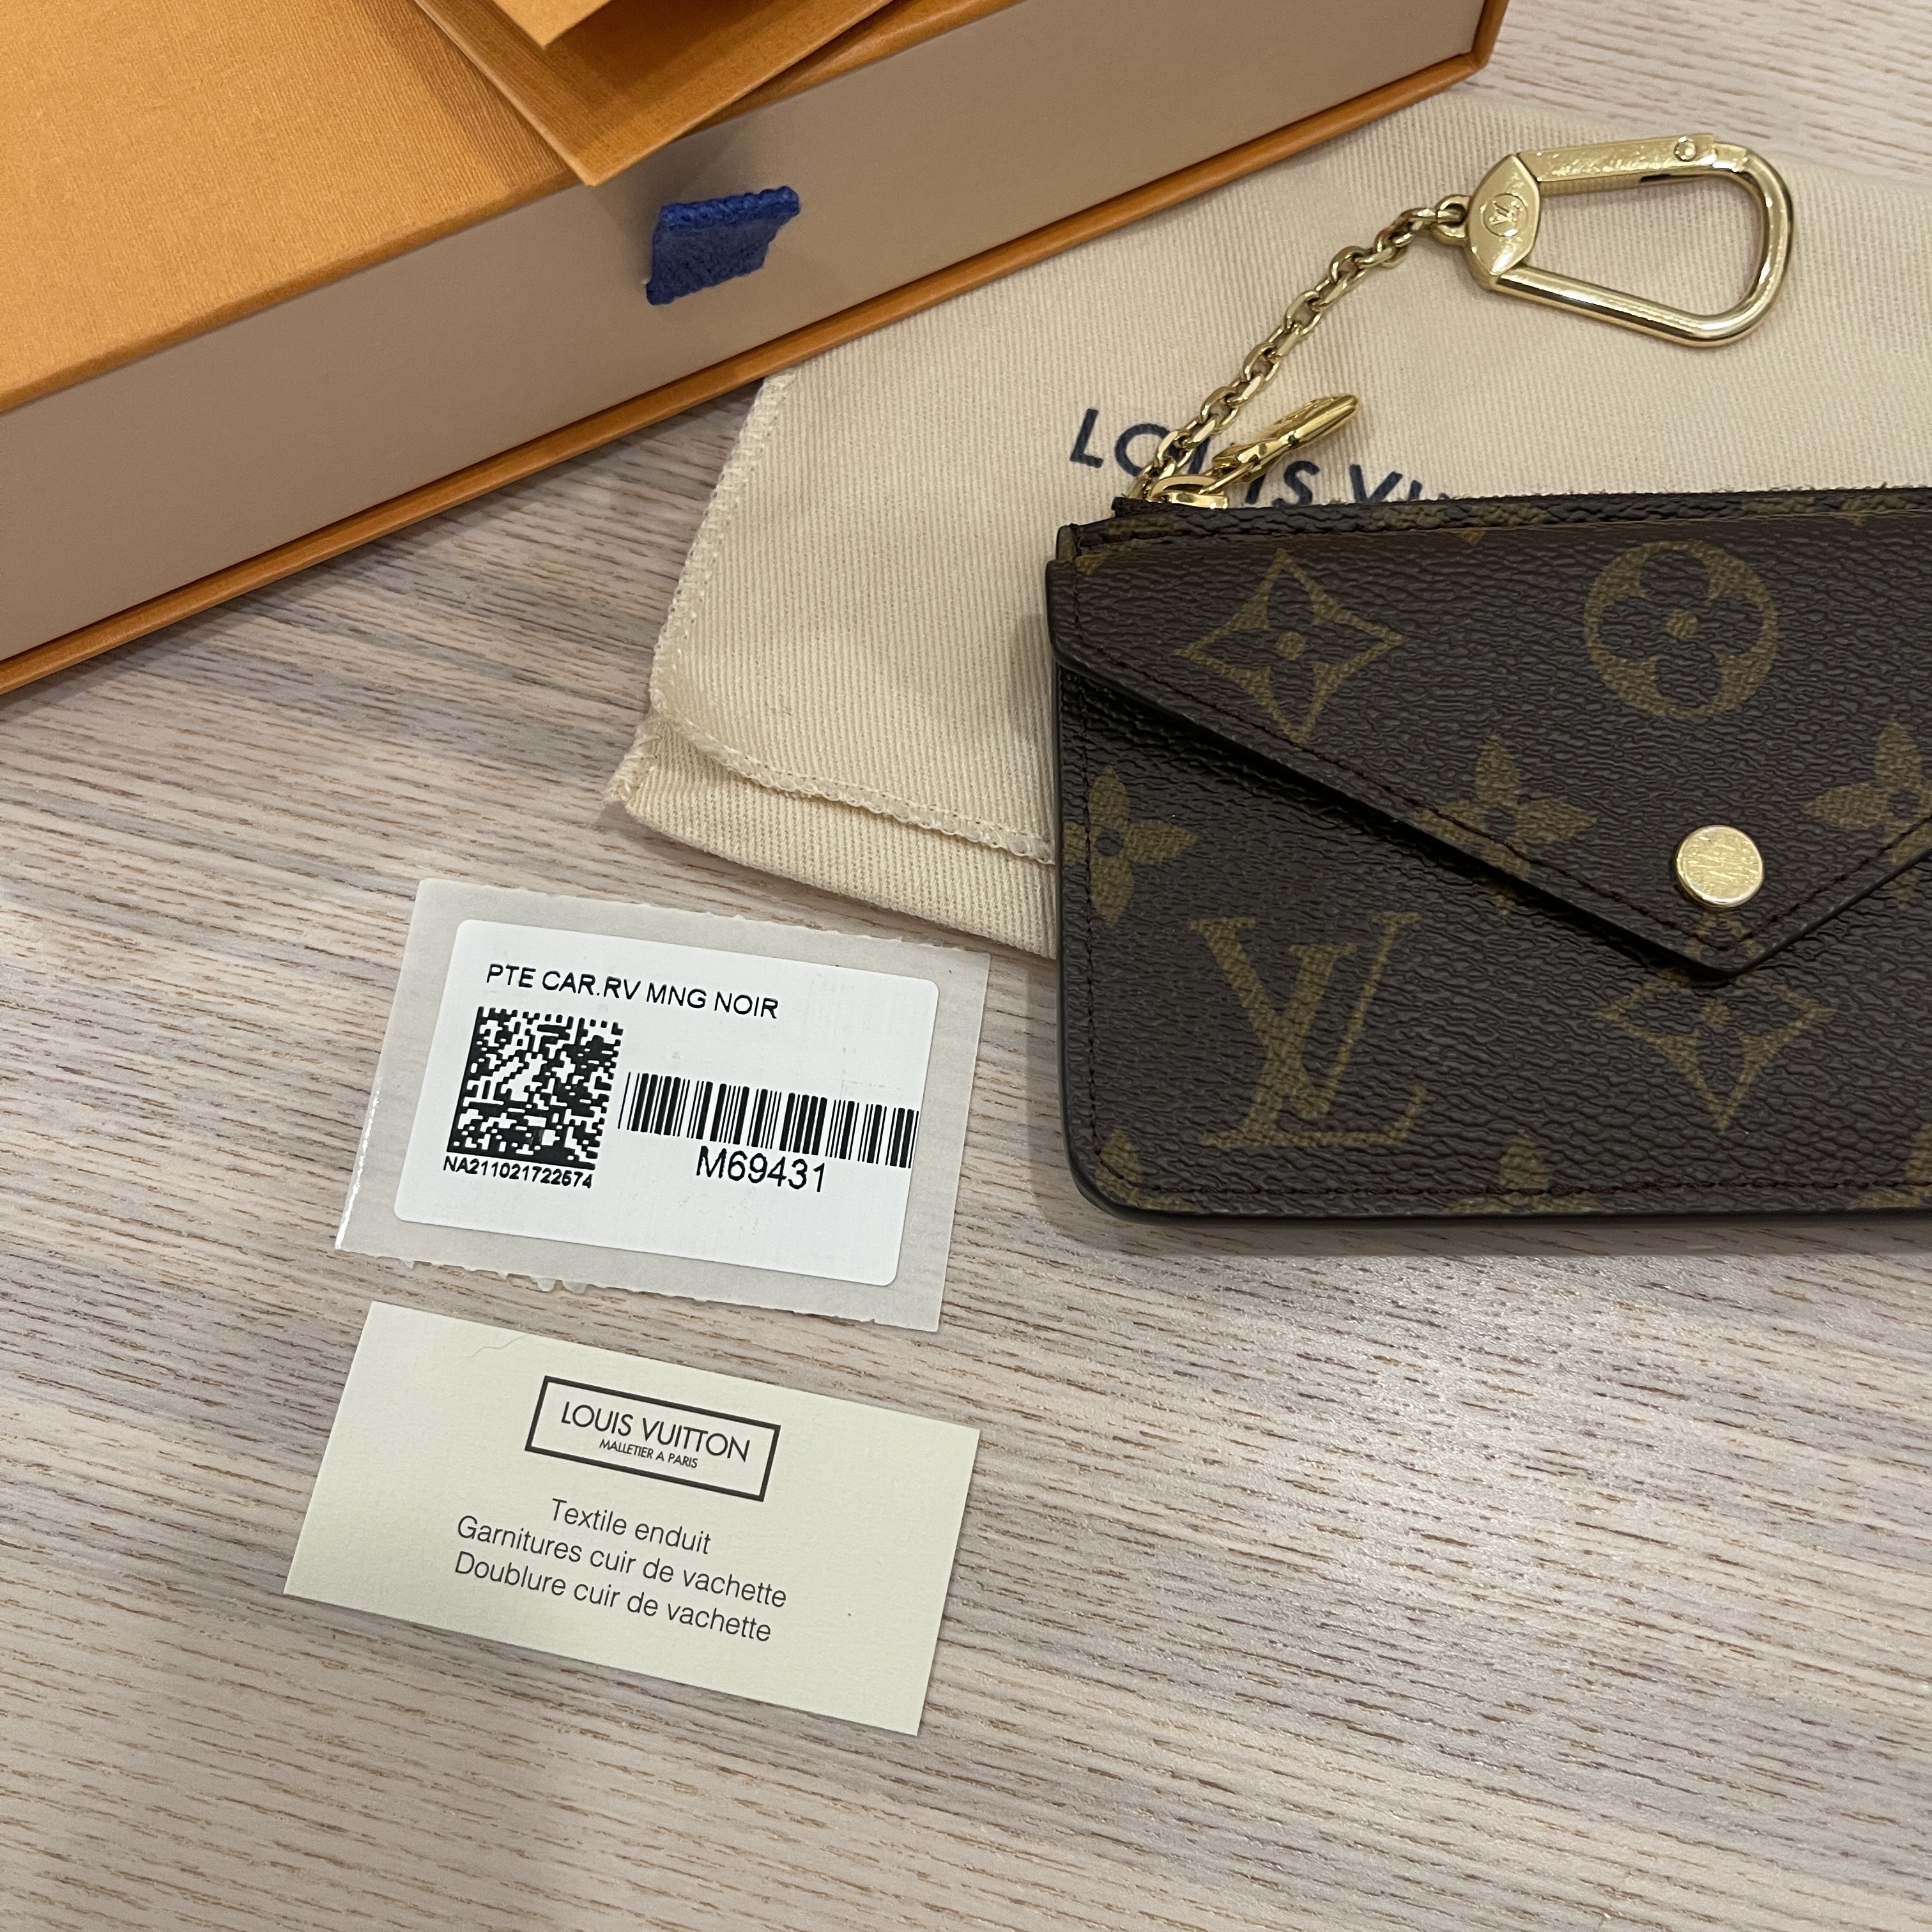 Louis Vuitton Recto Verso vs Key Pouch - Empreinte 